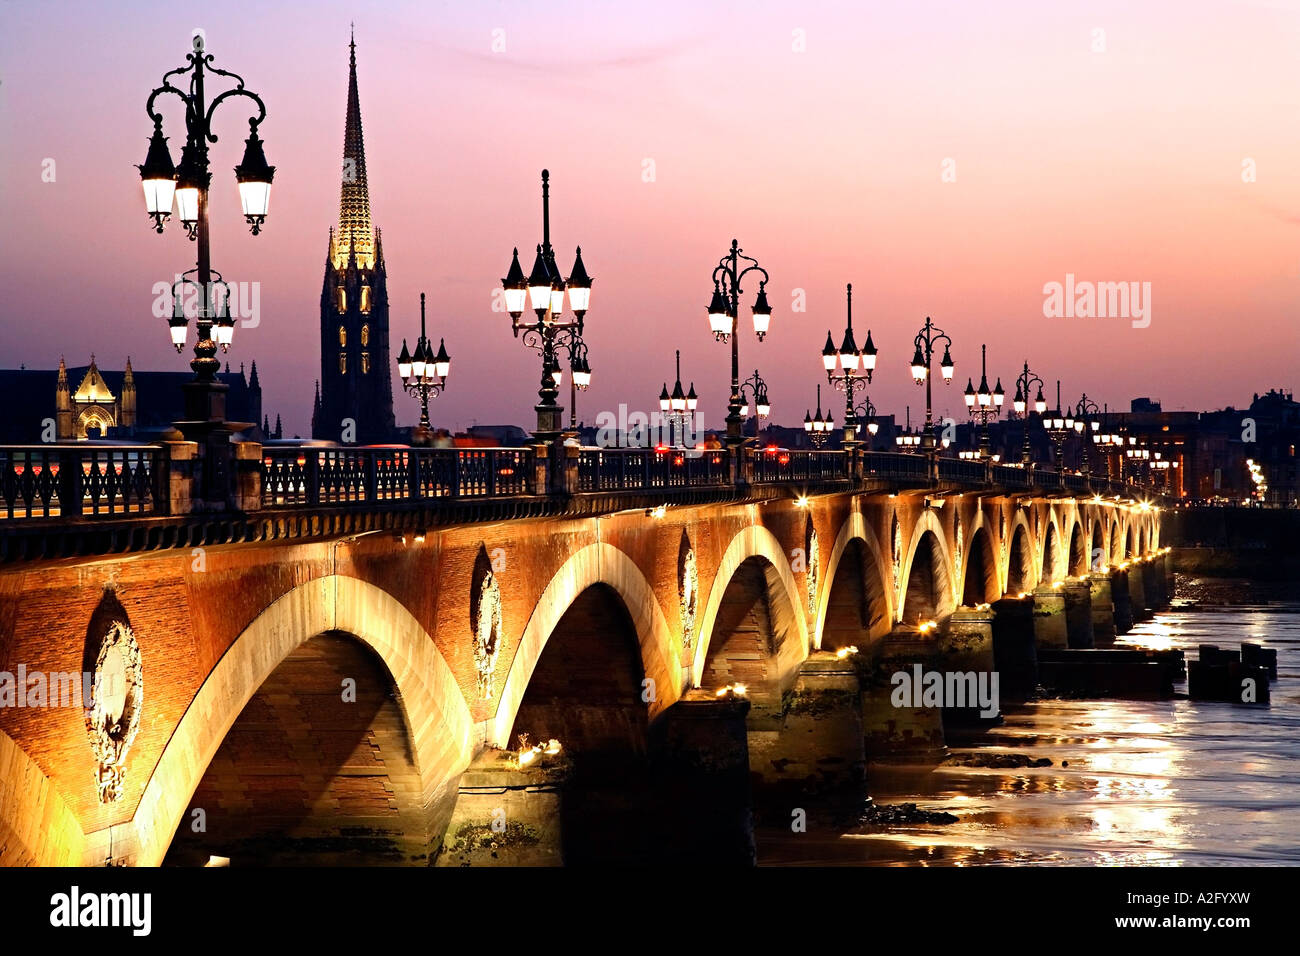 The bridge Pont de Pierre and the river La Garonne at dusk. Bordeaux, France. Stock Photo